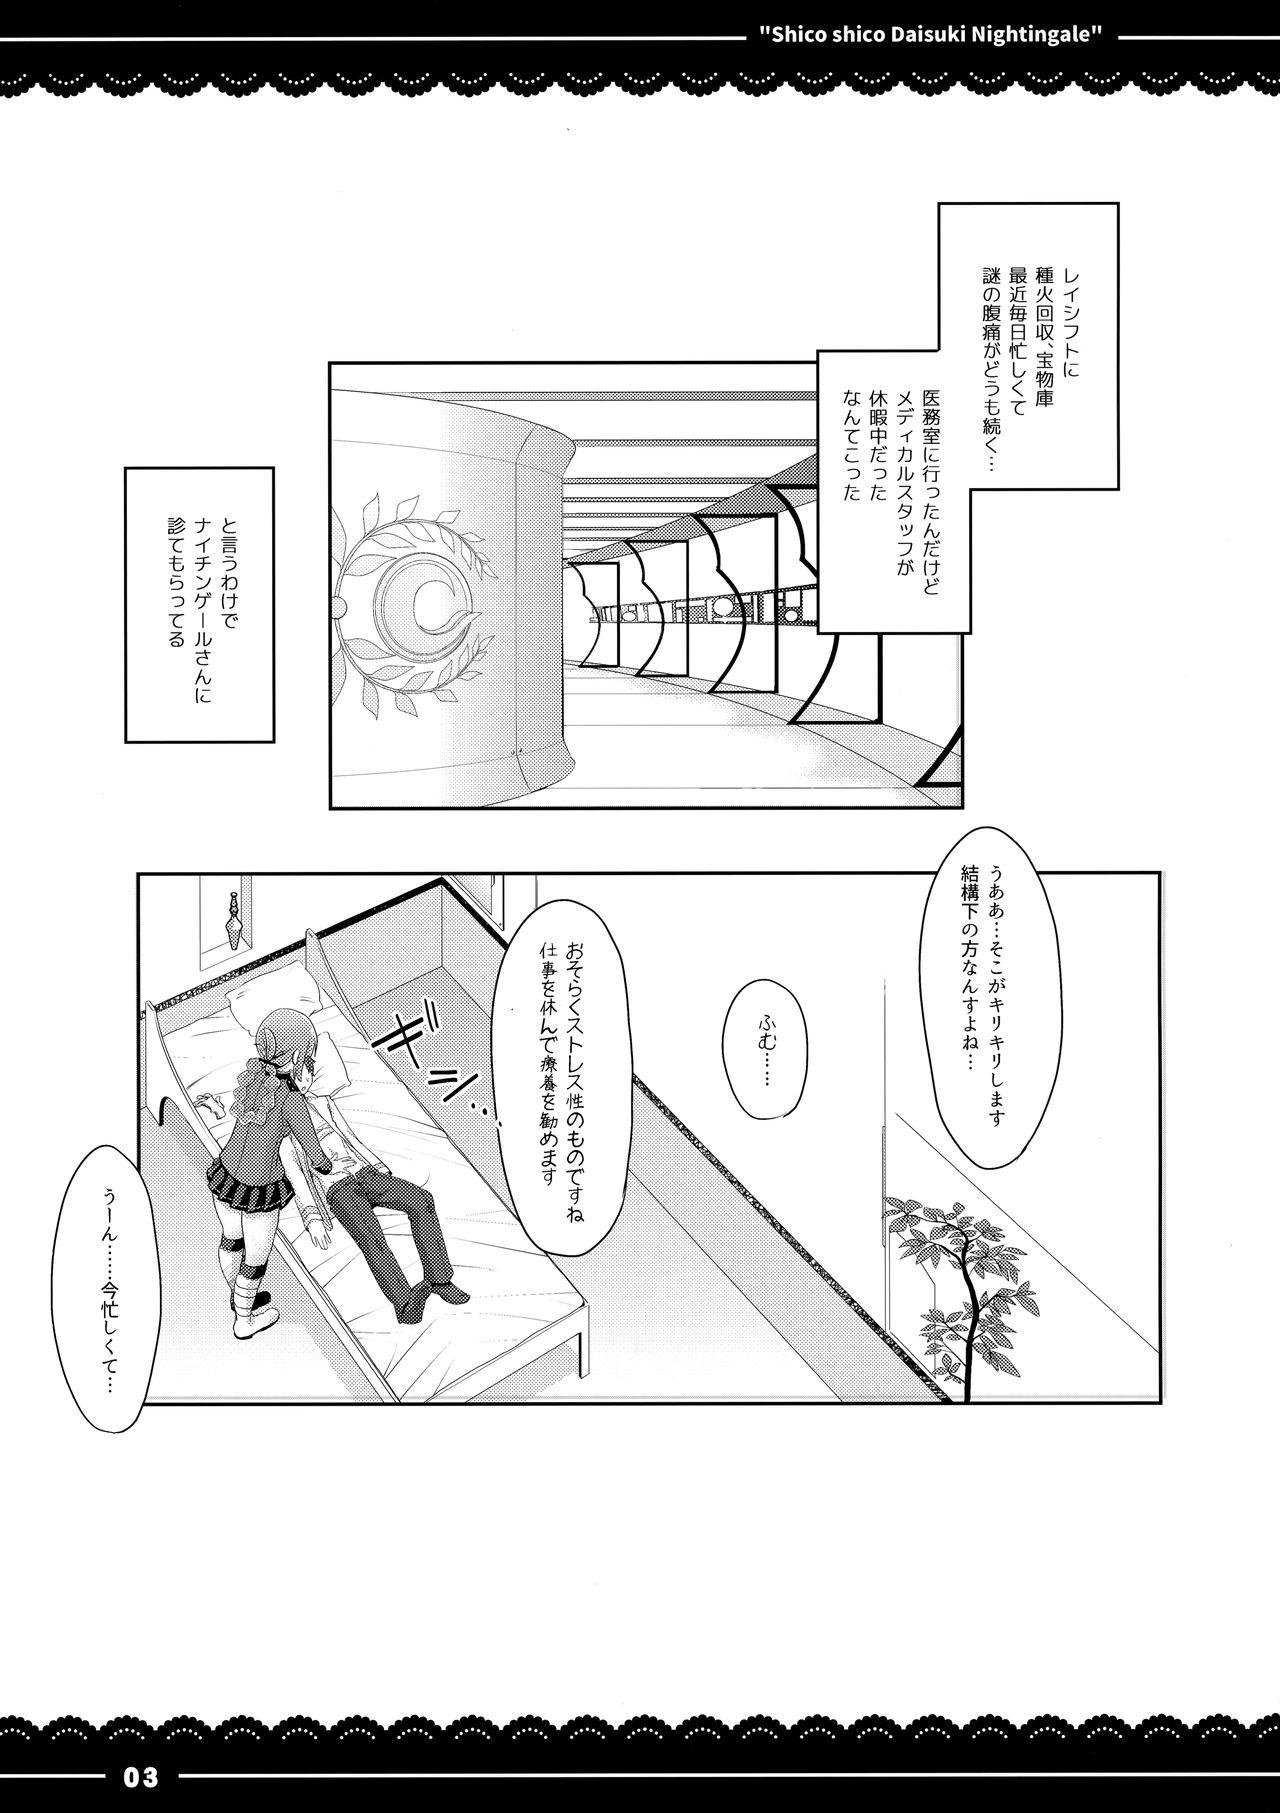 Nuru Shikoshiko Daisuki Nightingale + Kaijou Gentei Omakebon - Fate grand order Camshow - Page 4